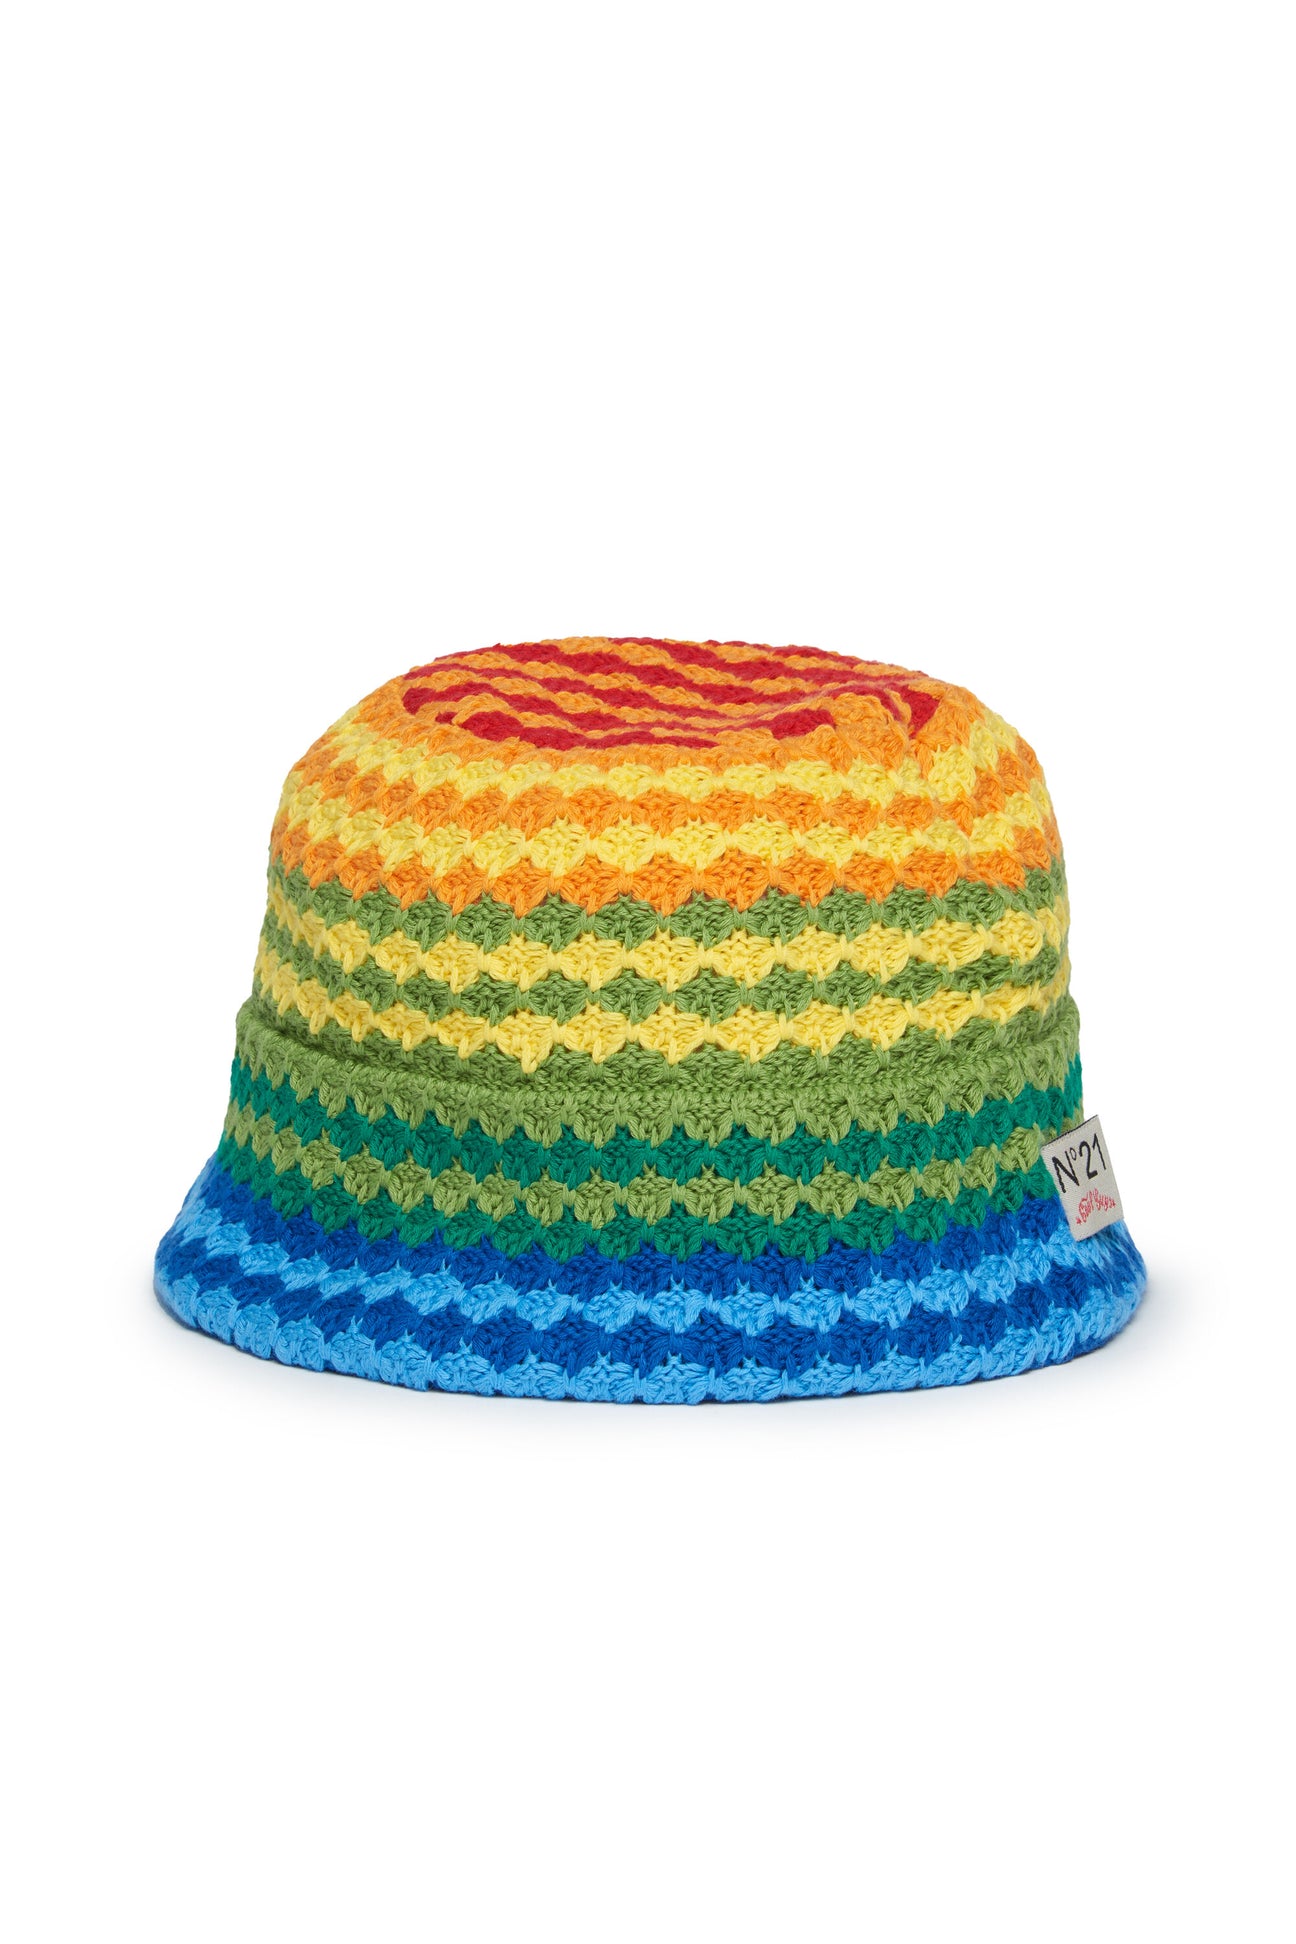 Rainbow Crochet knit hat Rainbow Crochet knit hat